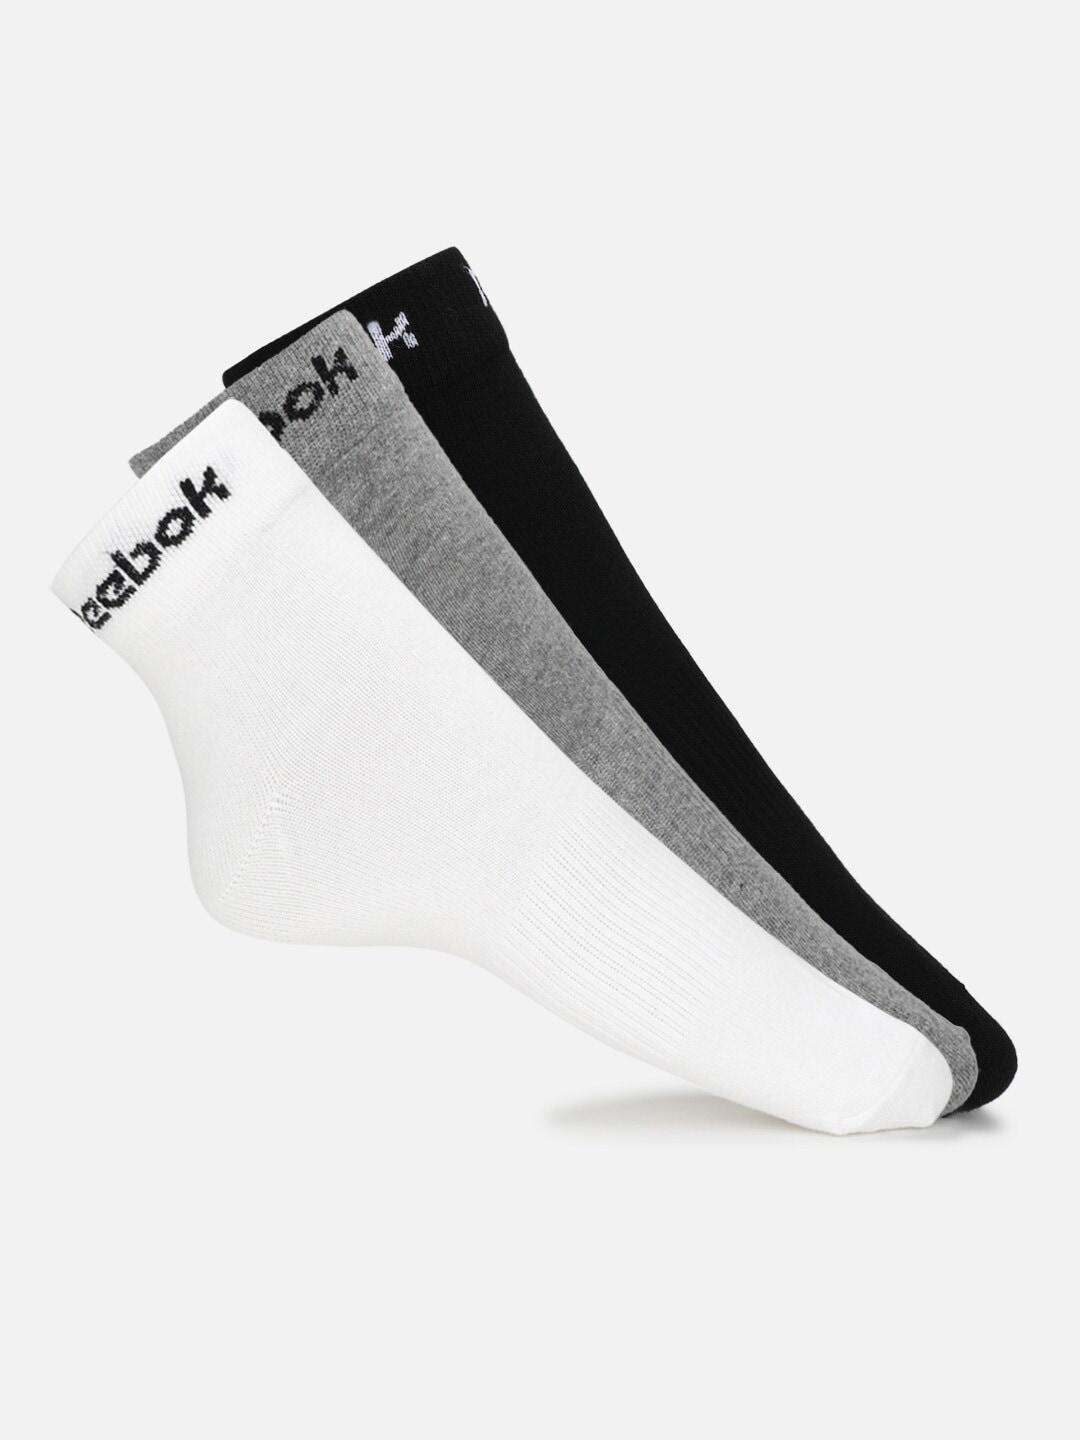 reebok-men-pack-of-3-patterned-ankle-length-socks